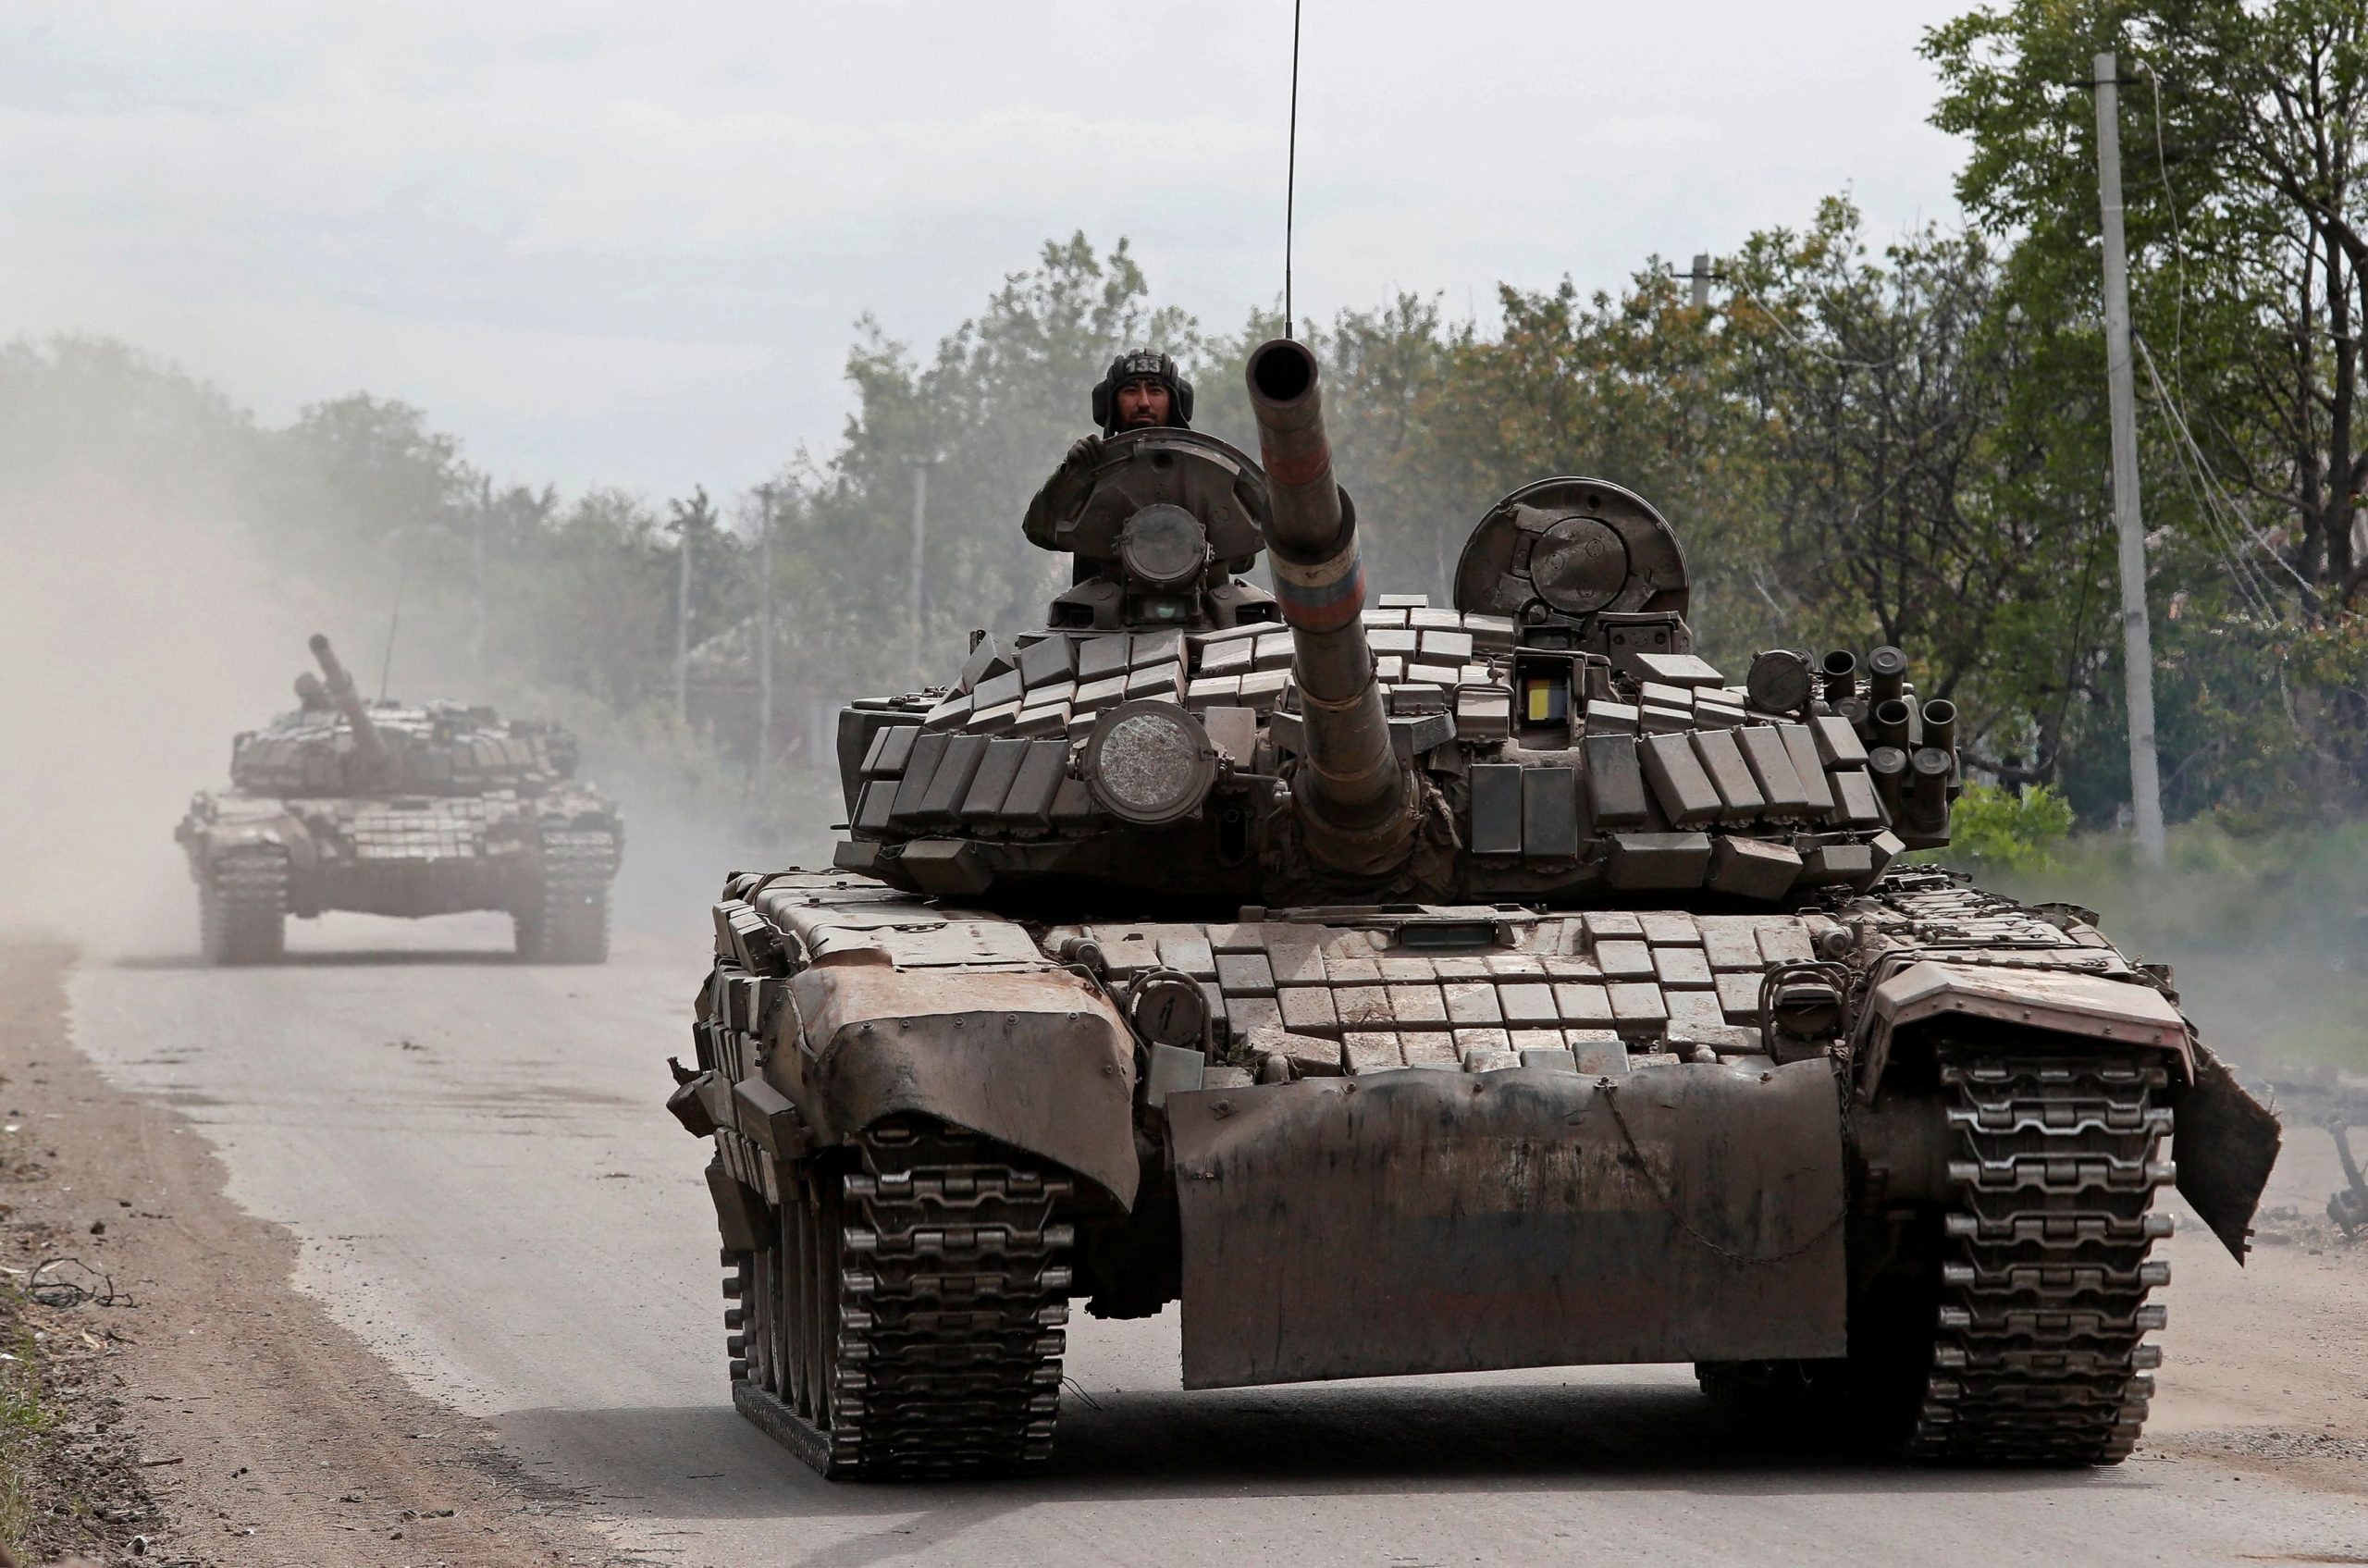 Προειδοποίηση Μόσχας: Τα νέα όπλα στην Ουκρανία ενισχύουν το ρίσκο σύγκρουσης Ρωσίας – ΗΠΑ